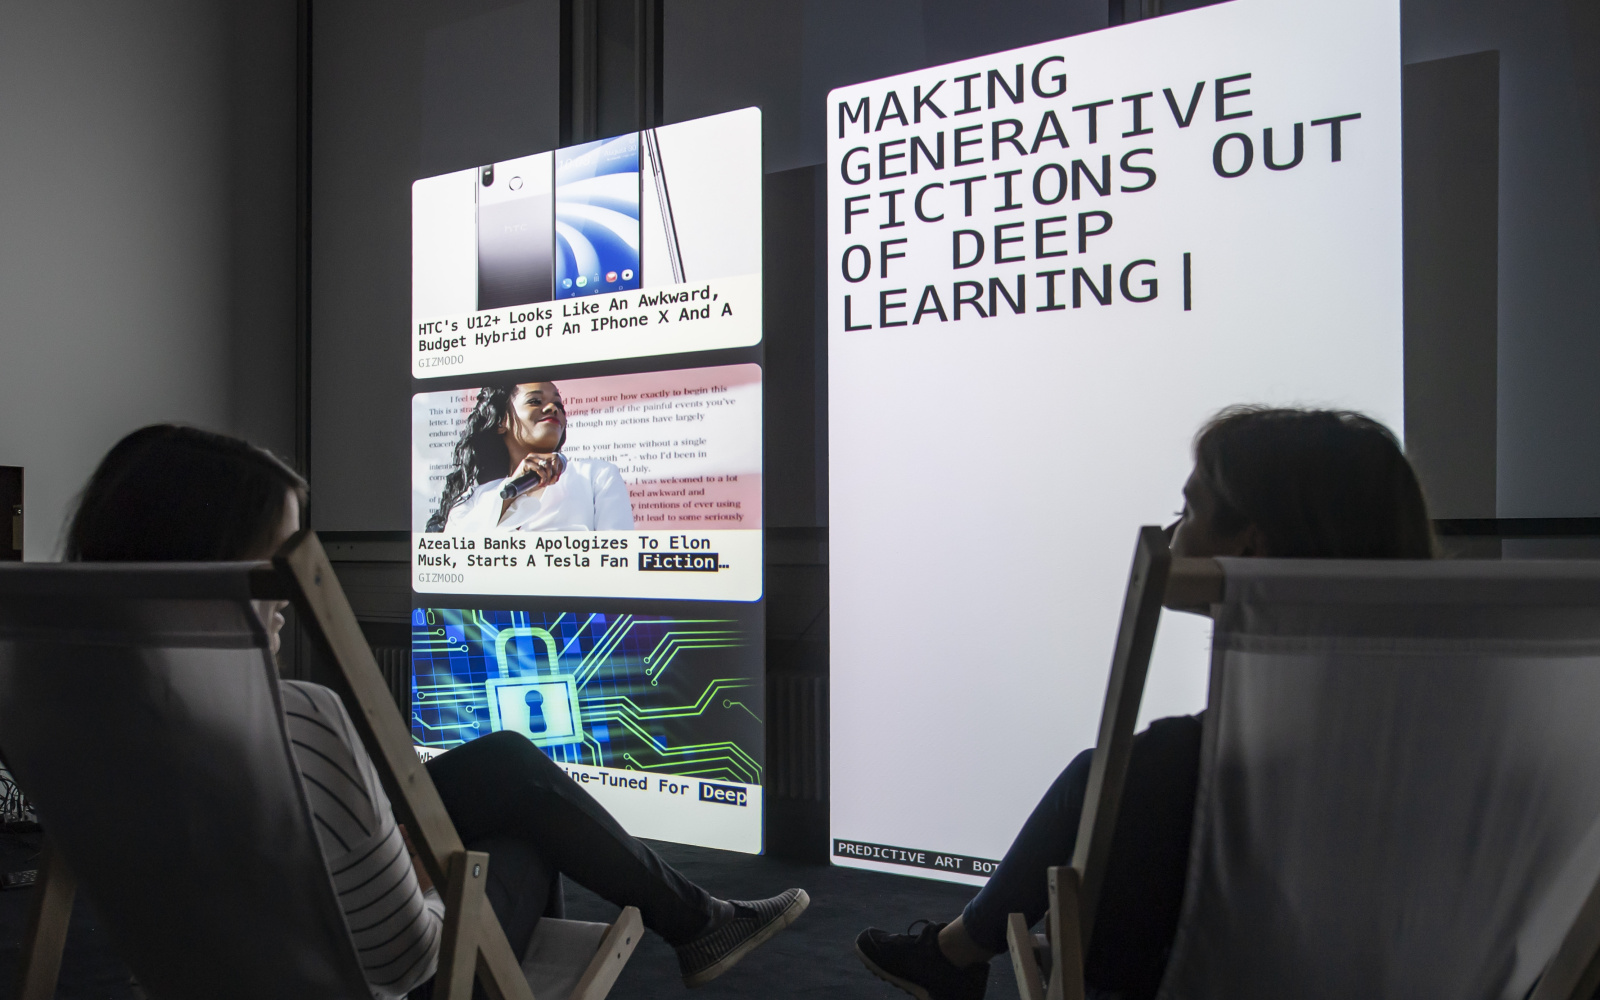 Zwei Personen sitzen in Liegestühlen vor zwei großen Bildschirmen. Auf dem rechten Bildschirm steht "Making generative fictions out of deep learning"